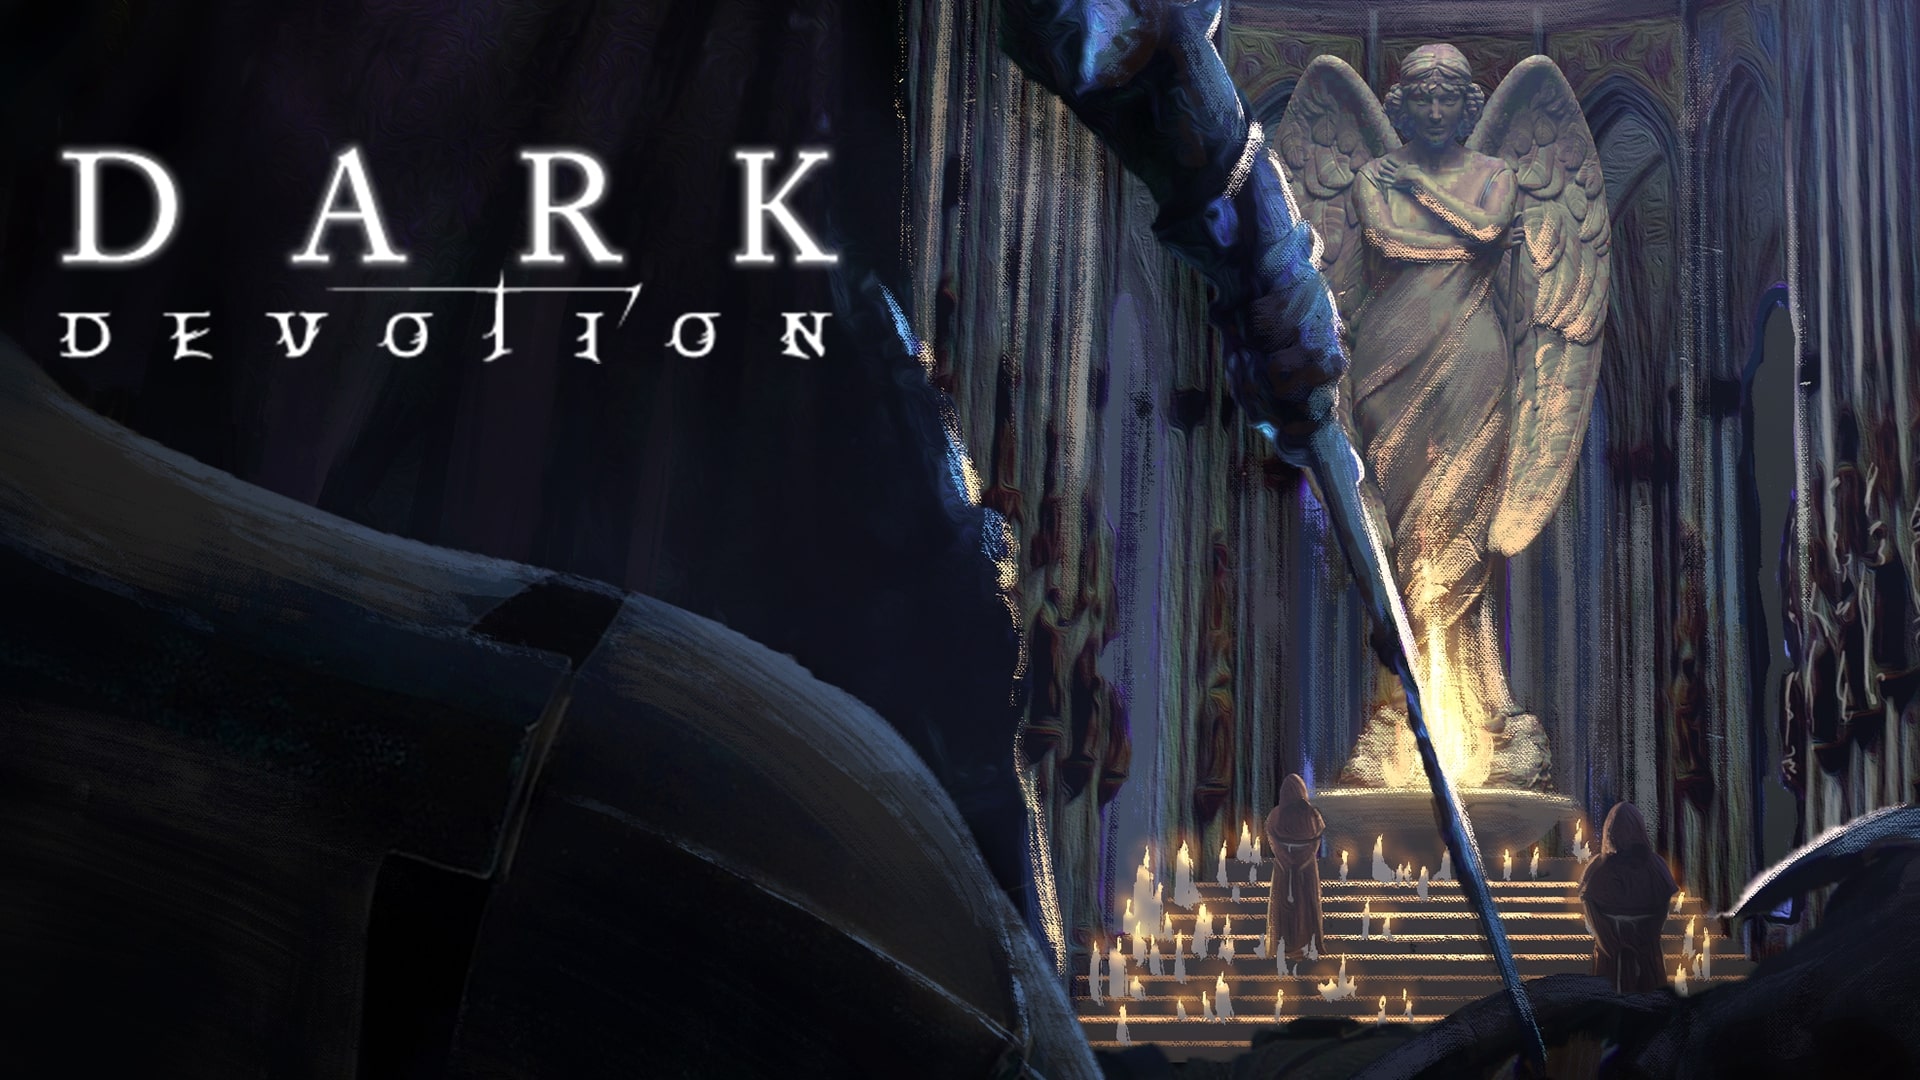 Dark devotion repousse sa sortie à 2019 et publie un making of